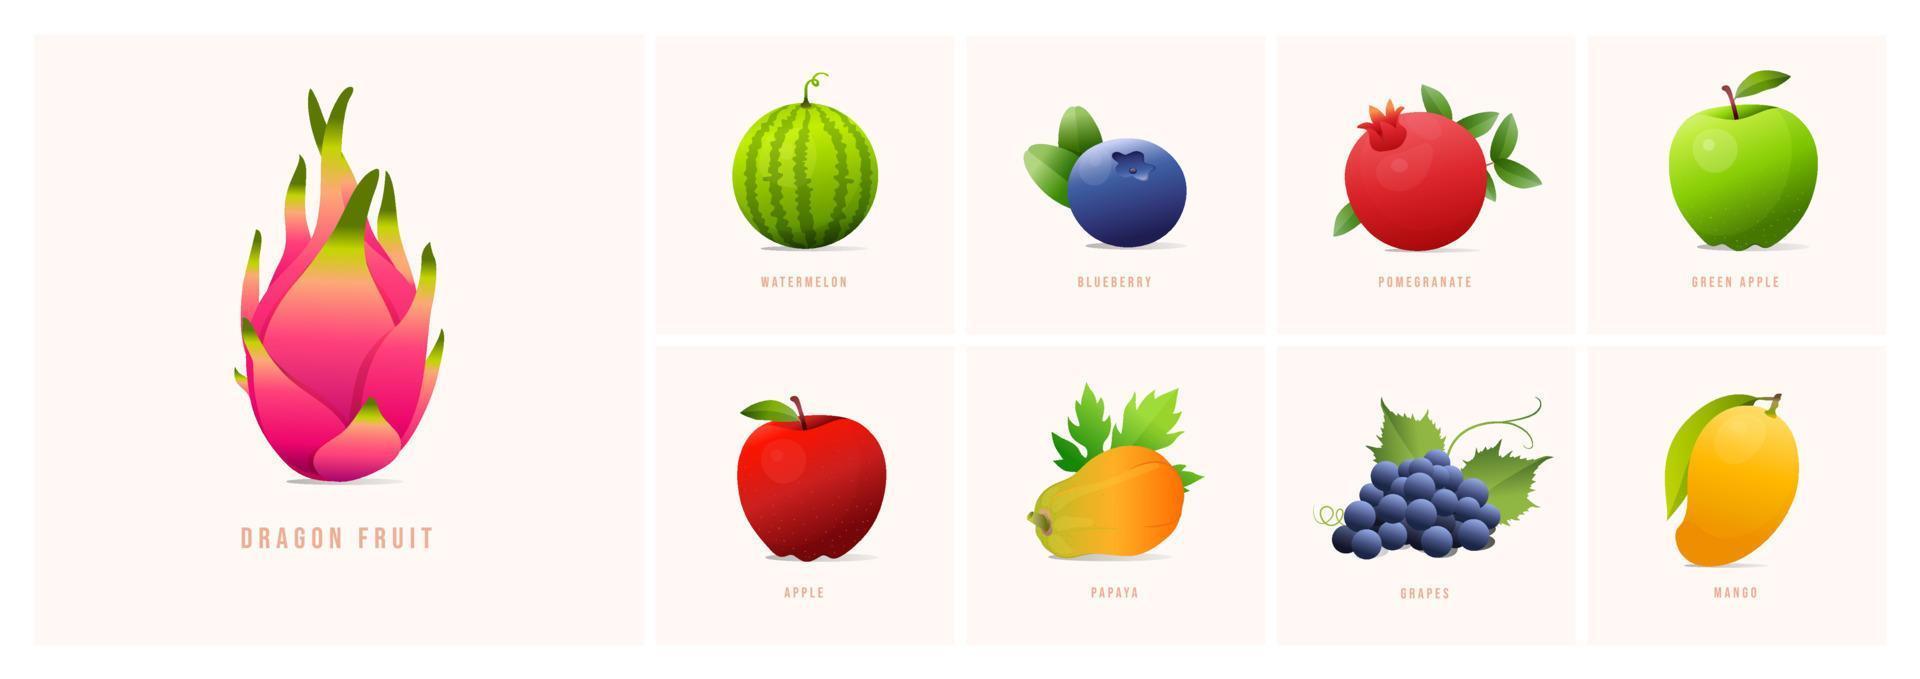 conjunto de frutas, ilustrações vetoriais de estilo moderno. uvas, melancia, mirtilo, romã, mamão, maçã, manga, maçã verde, fruta do dragão etc. vetor